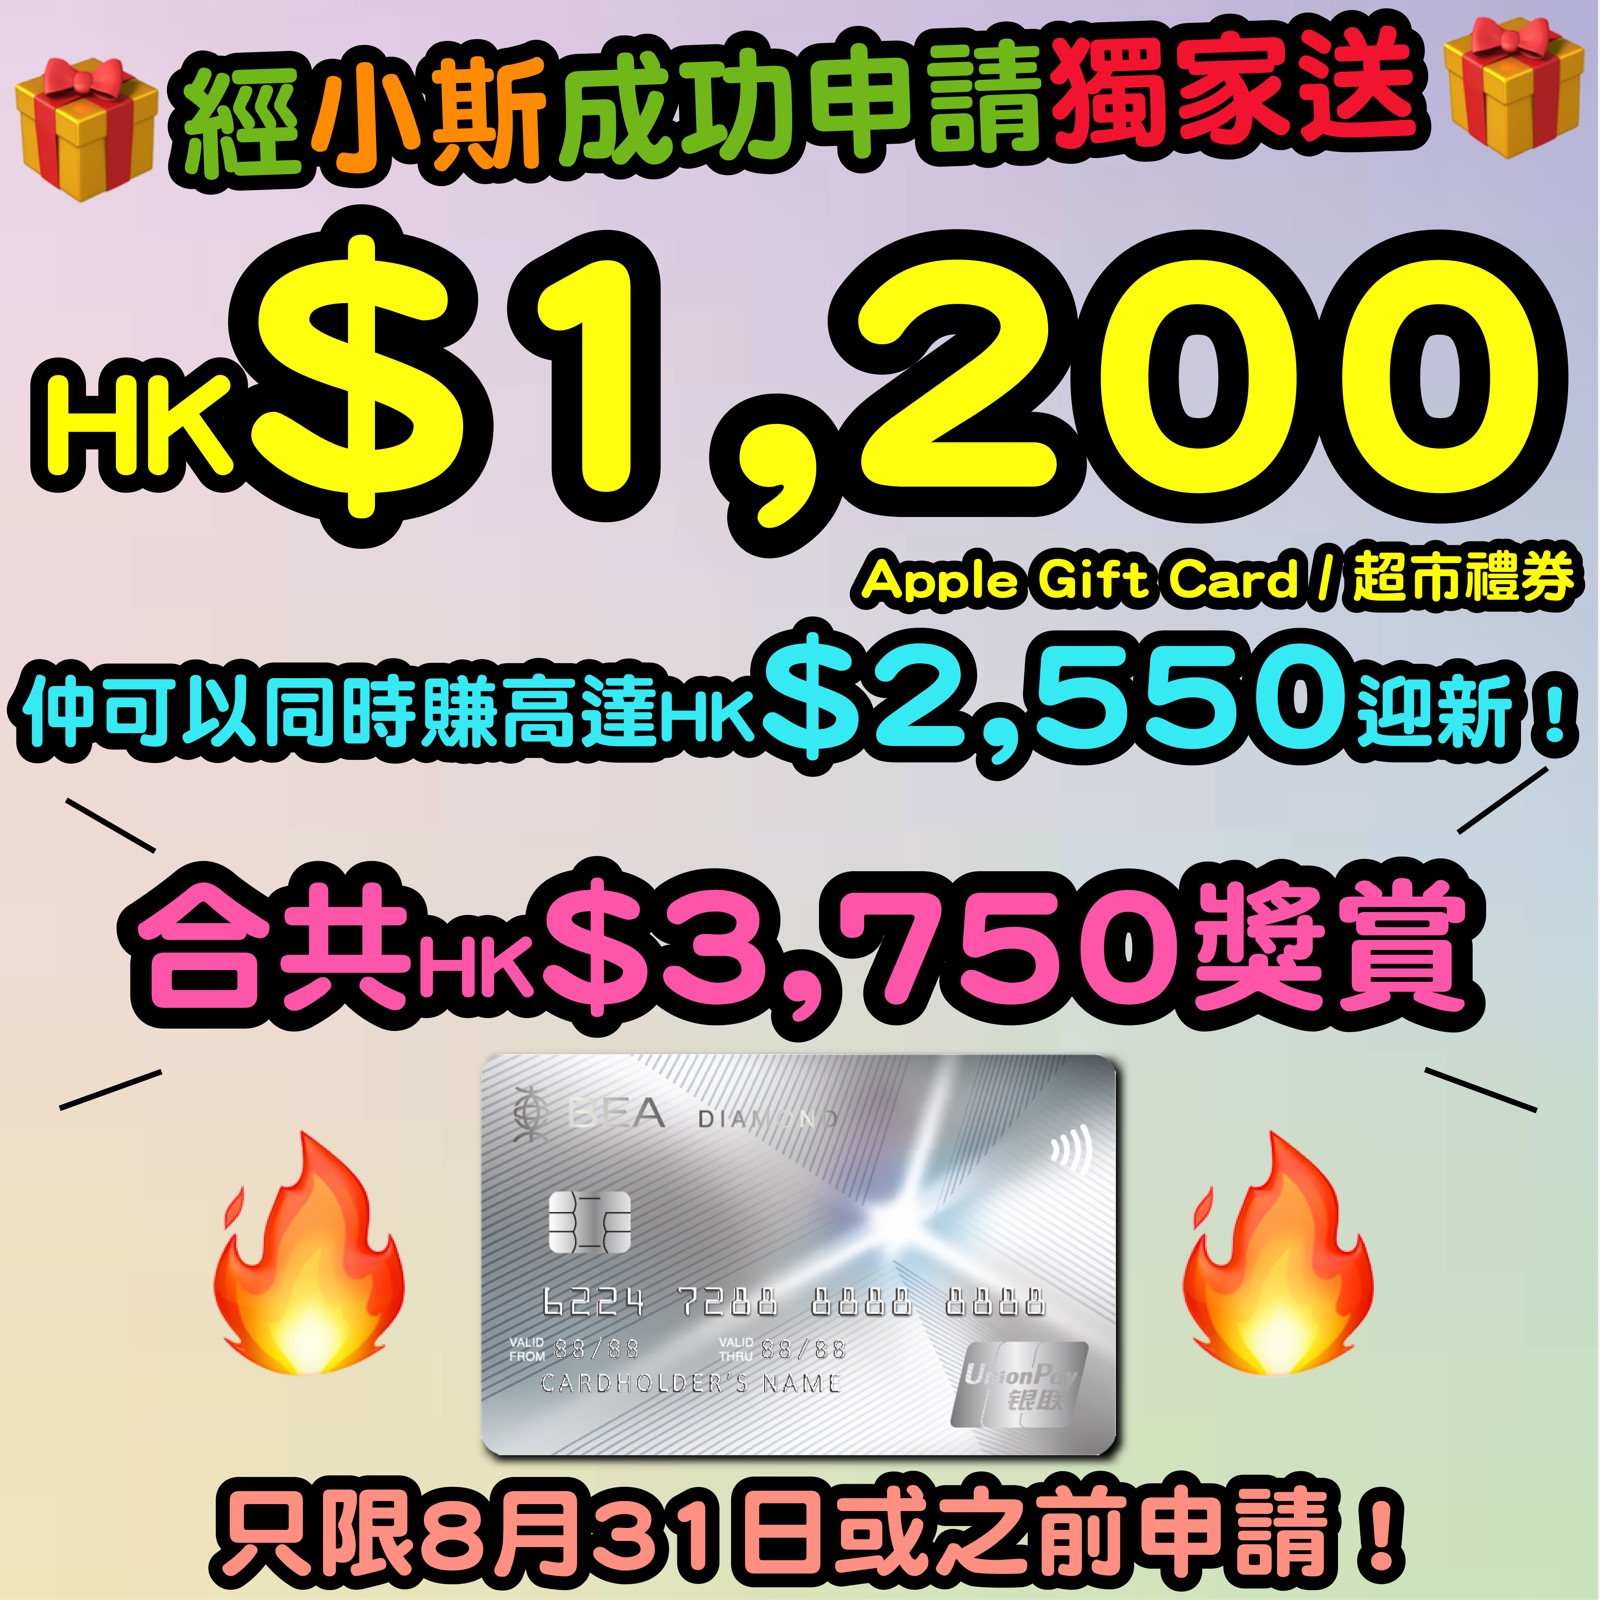 【🔥🔥東亞銀行銀聯雙幣鑽石信用卡小斯優惠😍😍】10月31日或之前，新客戶經小斯申請有獨家HK$1,200 Apple Gift Card 或 超市禮券！仲可以同時賺高達HK$2,550迎新！合共HK$3,750獎賞！